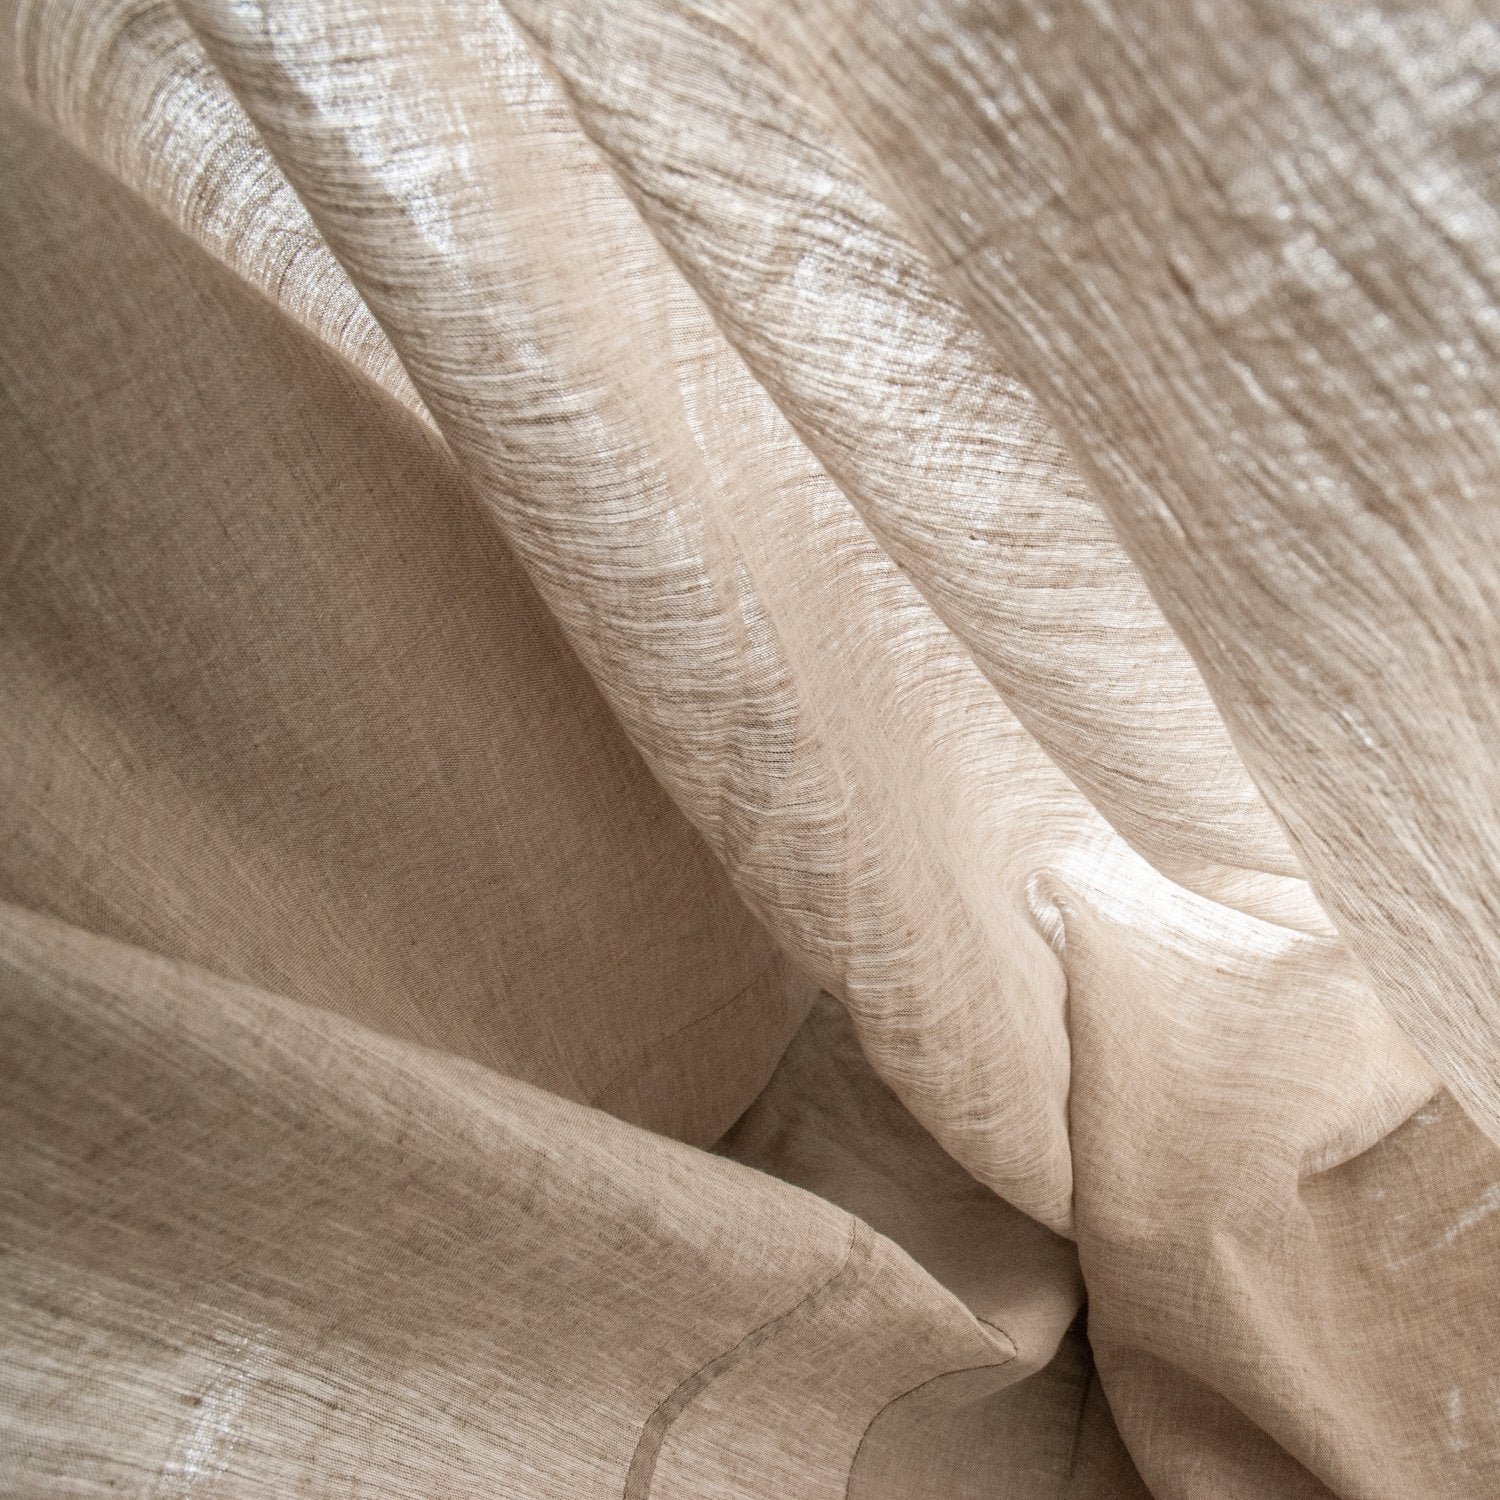 Detalle de la textura del lino natural rústico.